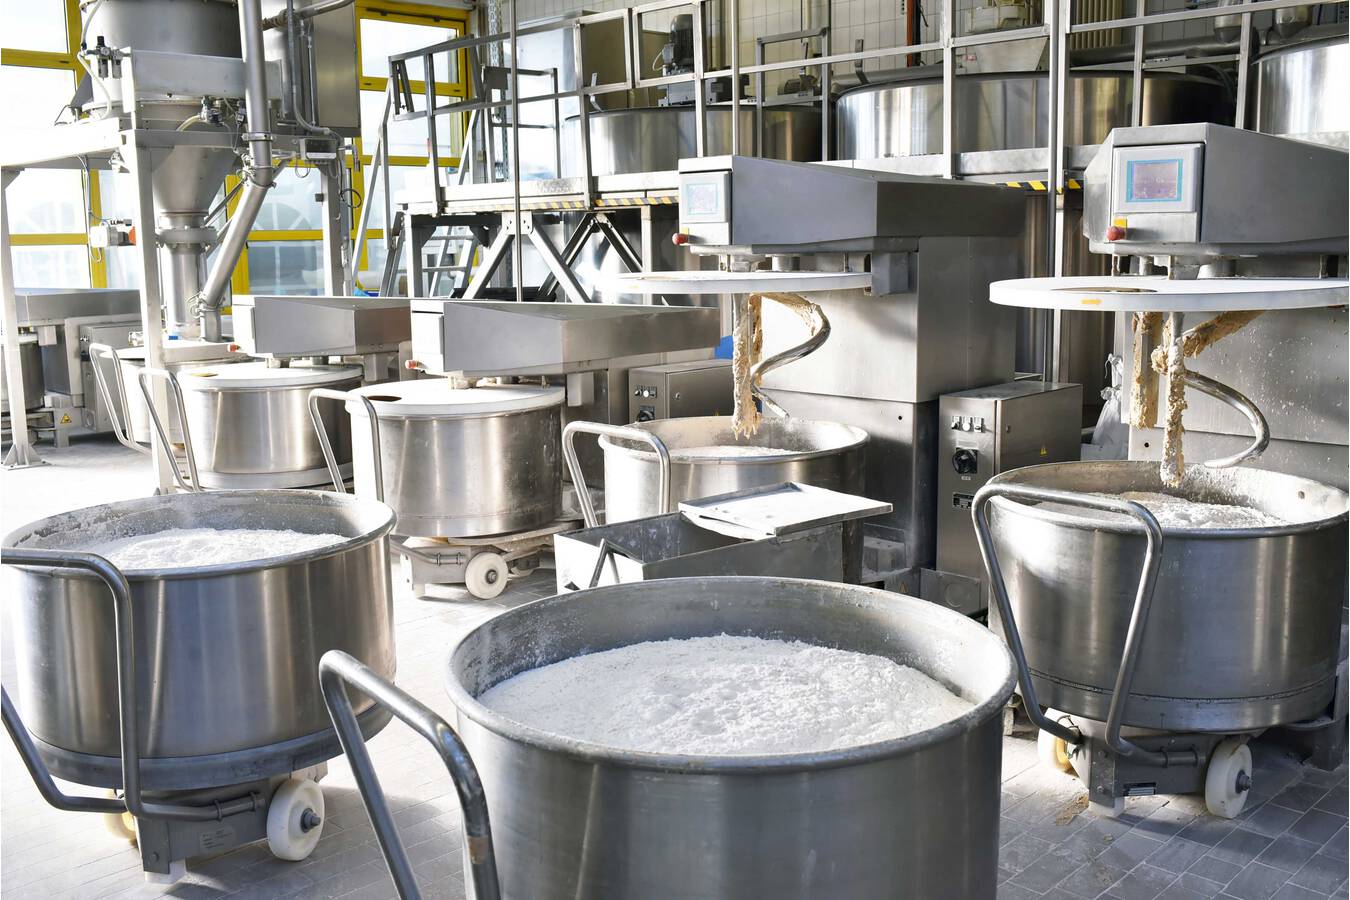 Der richtige Antrieb als Garant für hohe Prozesssicherheit Vielfalt für die Lebensmittelindustrie – auch bei hohen Hygieneanforderungen sicher antreiben. 